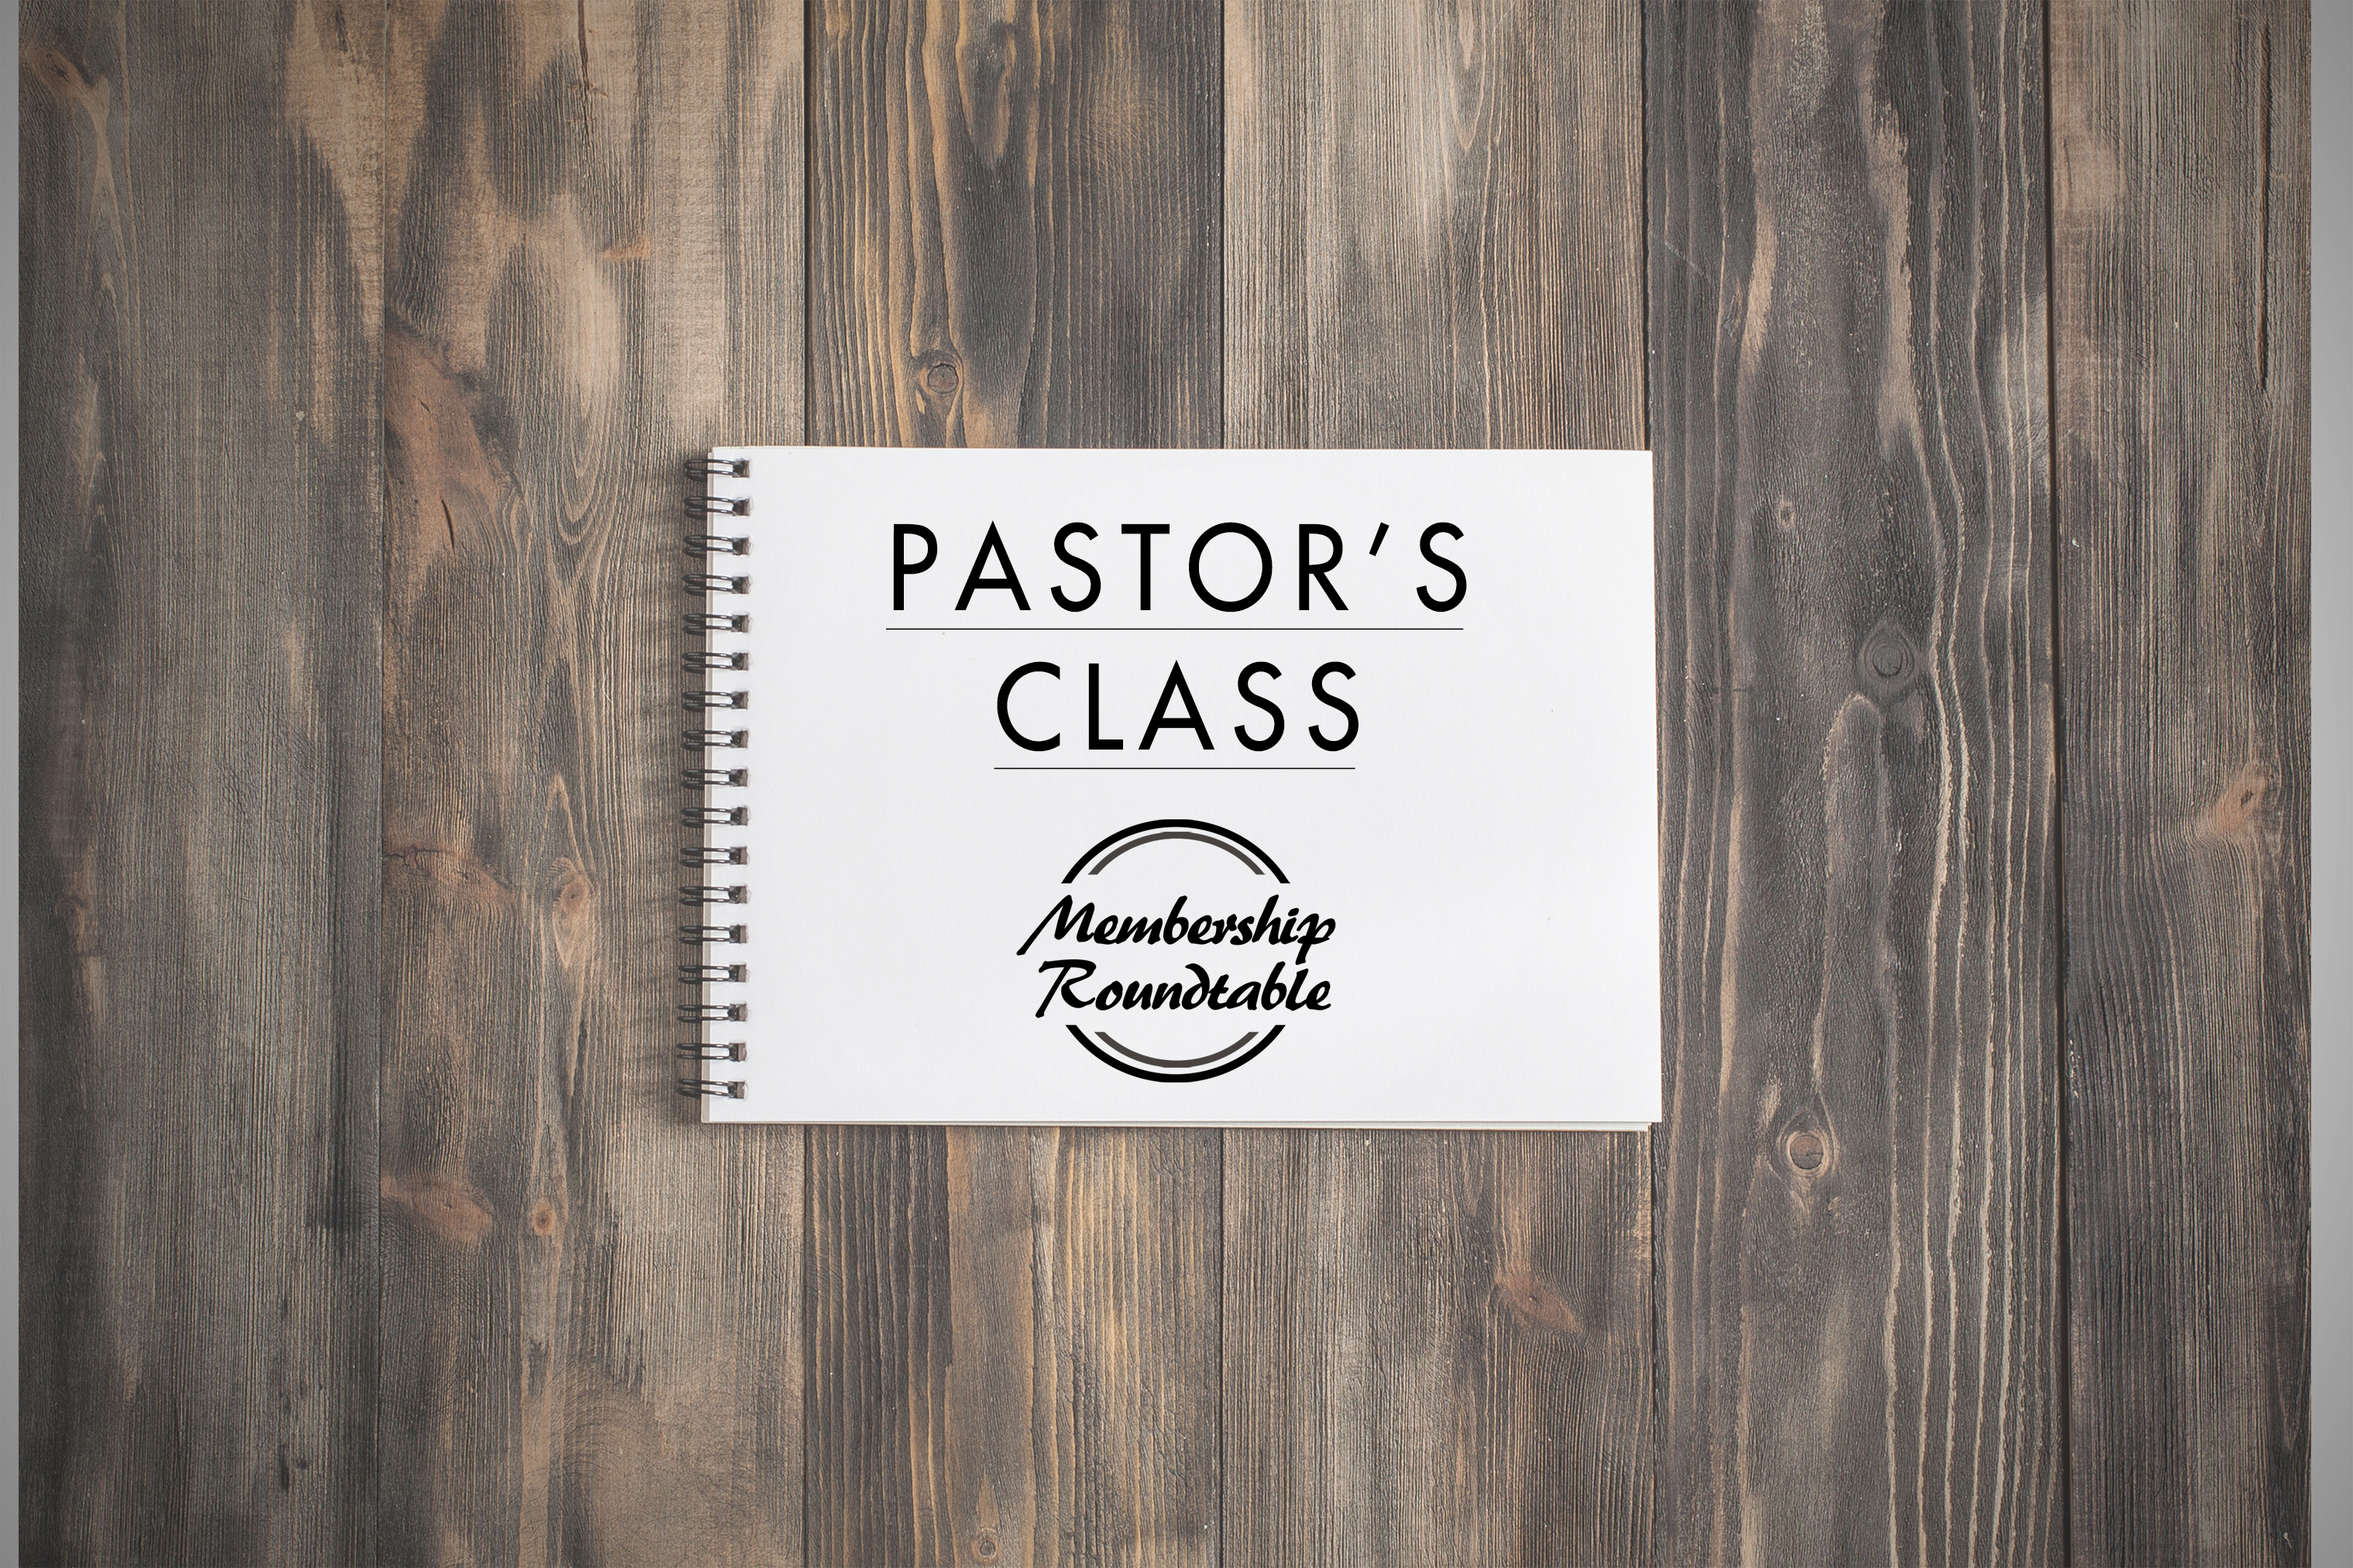 Pastors Class Graphic image